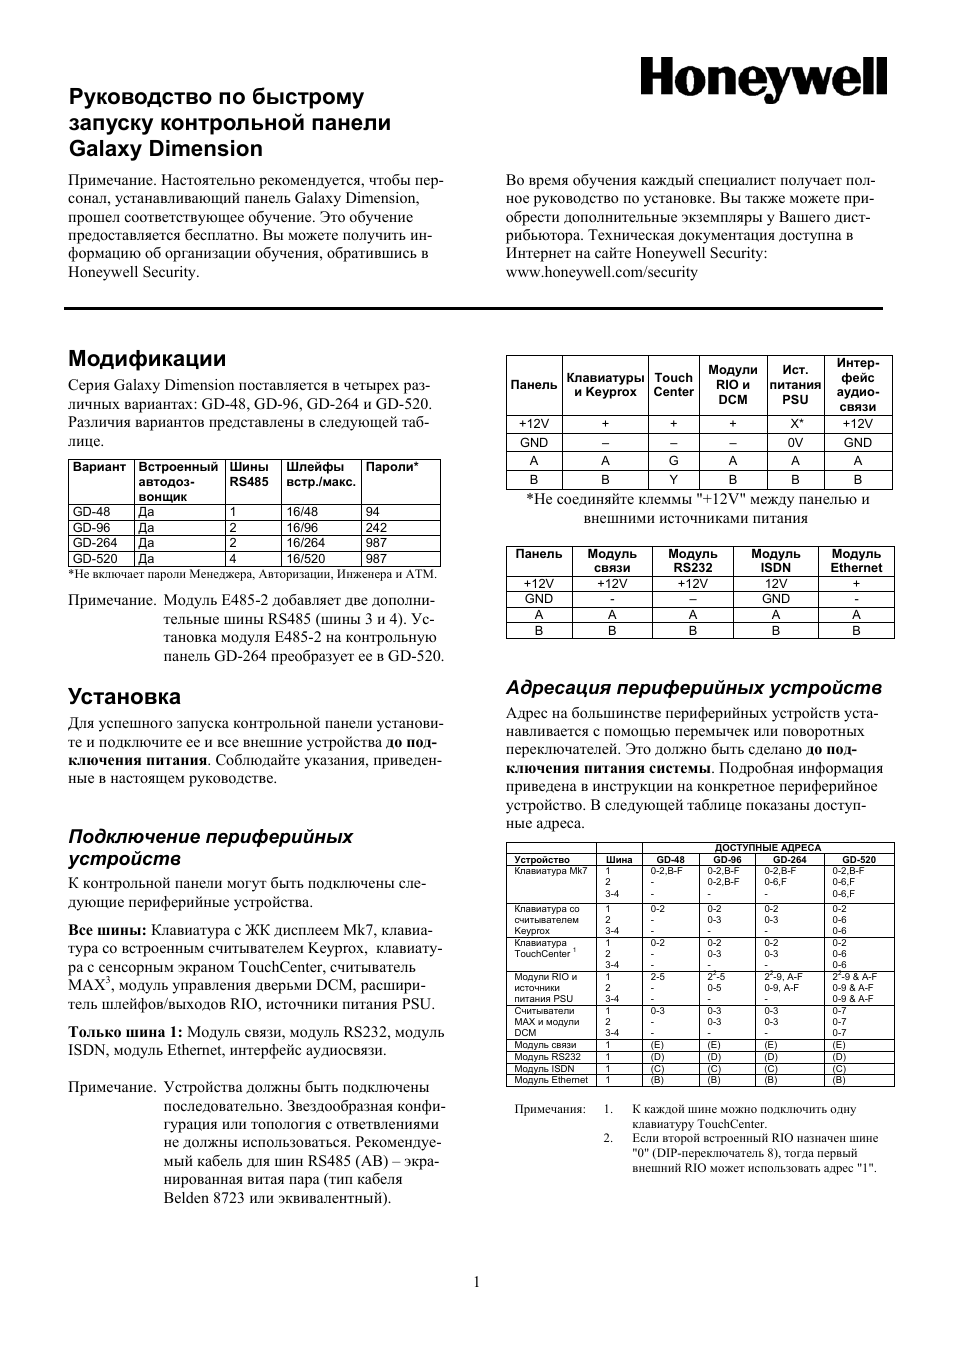 Инструкция по эксплуатации Honeywell Руководство по быстрому запуску Galaxy Dimension | 6 страниц